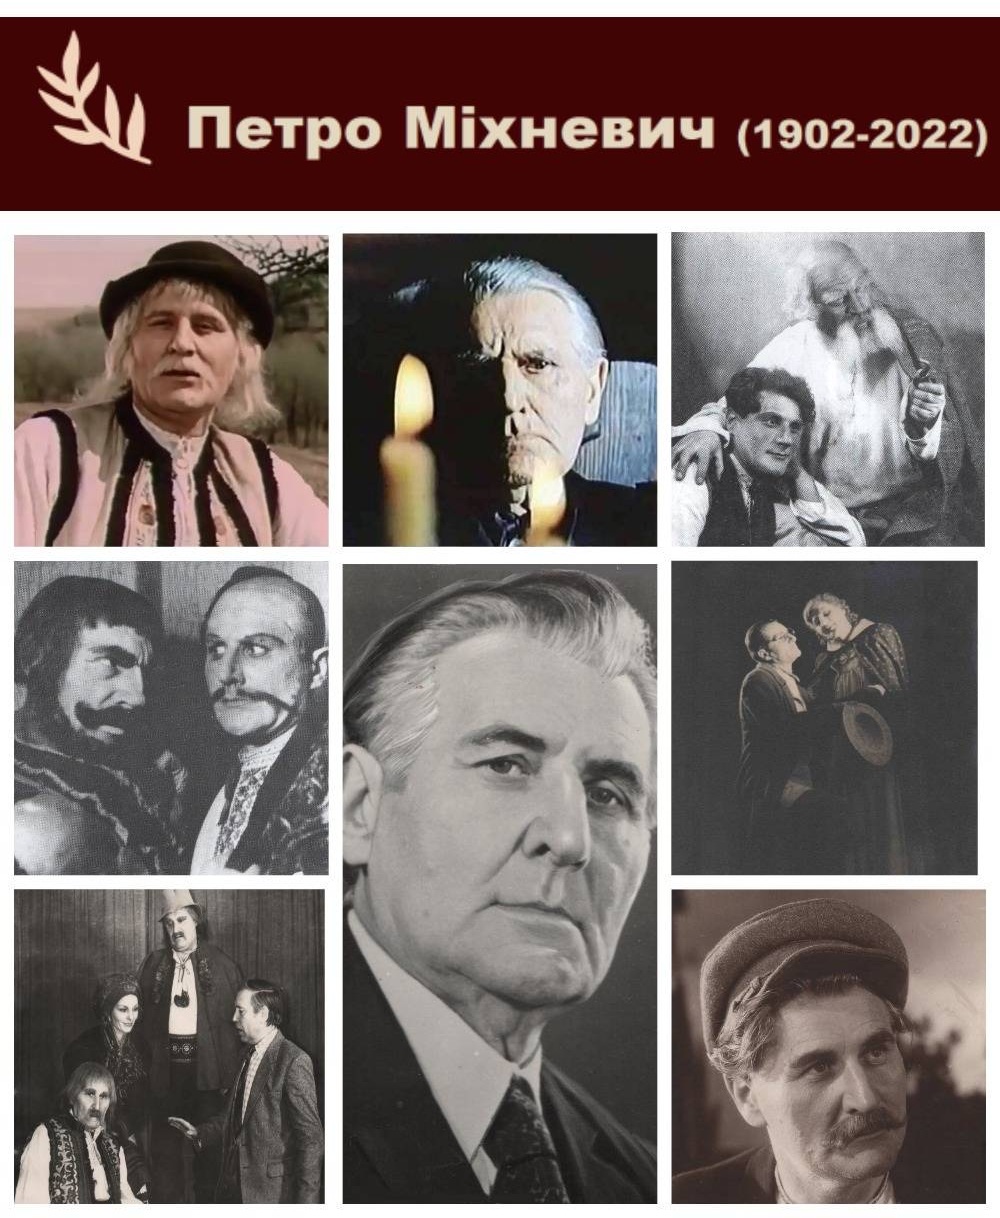 'Завжди вважав себе буковинцем': легенді чернівецької театральної сцени Петру Міхневичу в суботу, 22 жовтня, виповнюється 120 років  